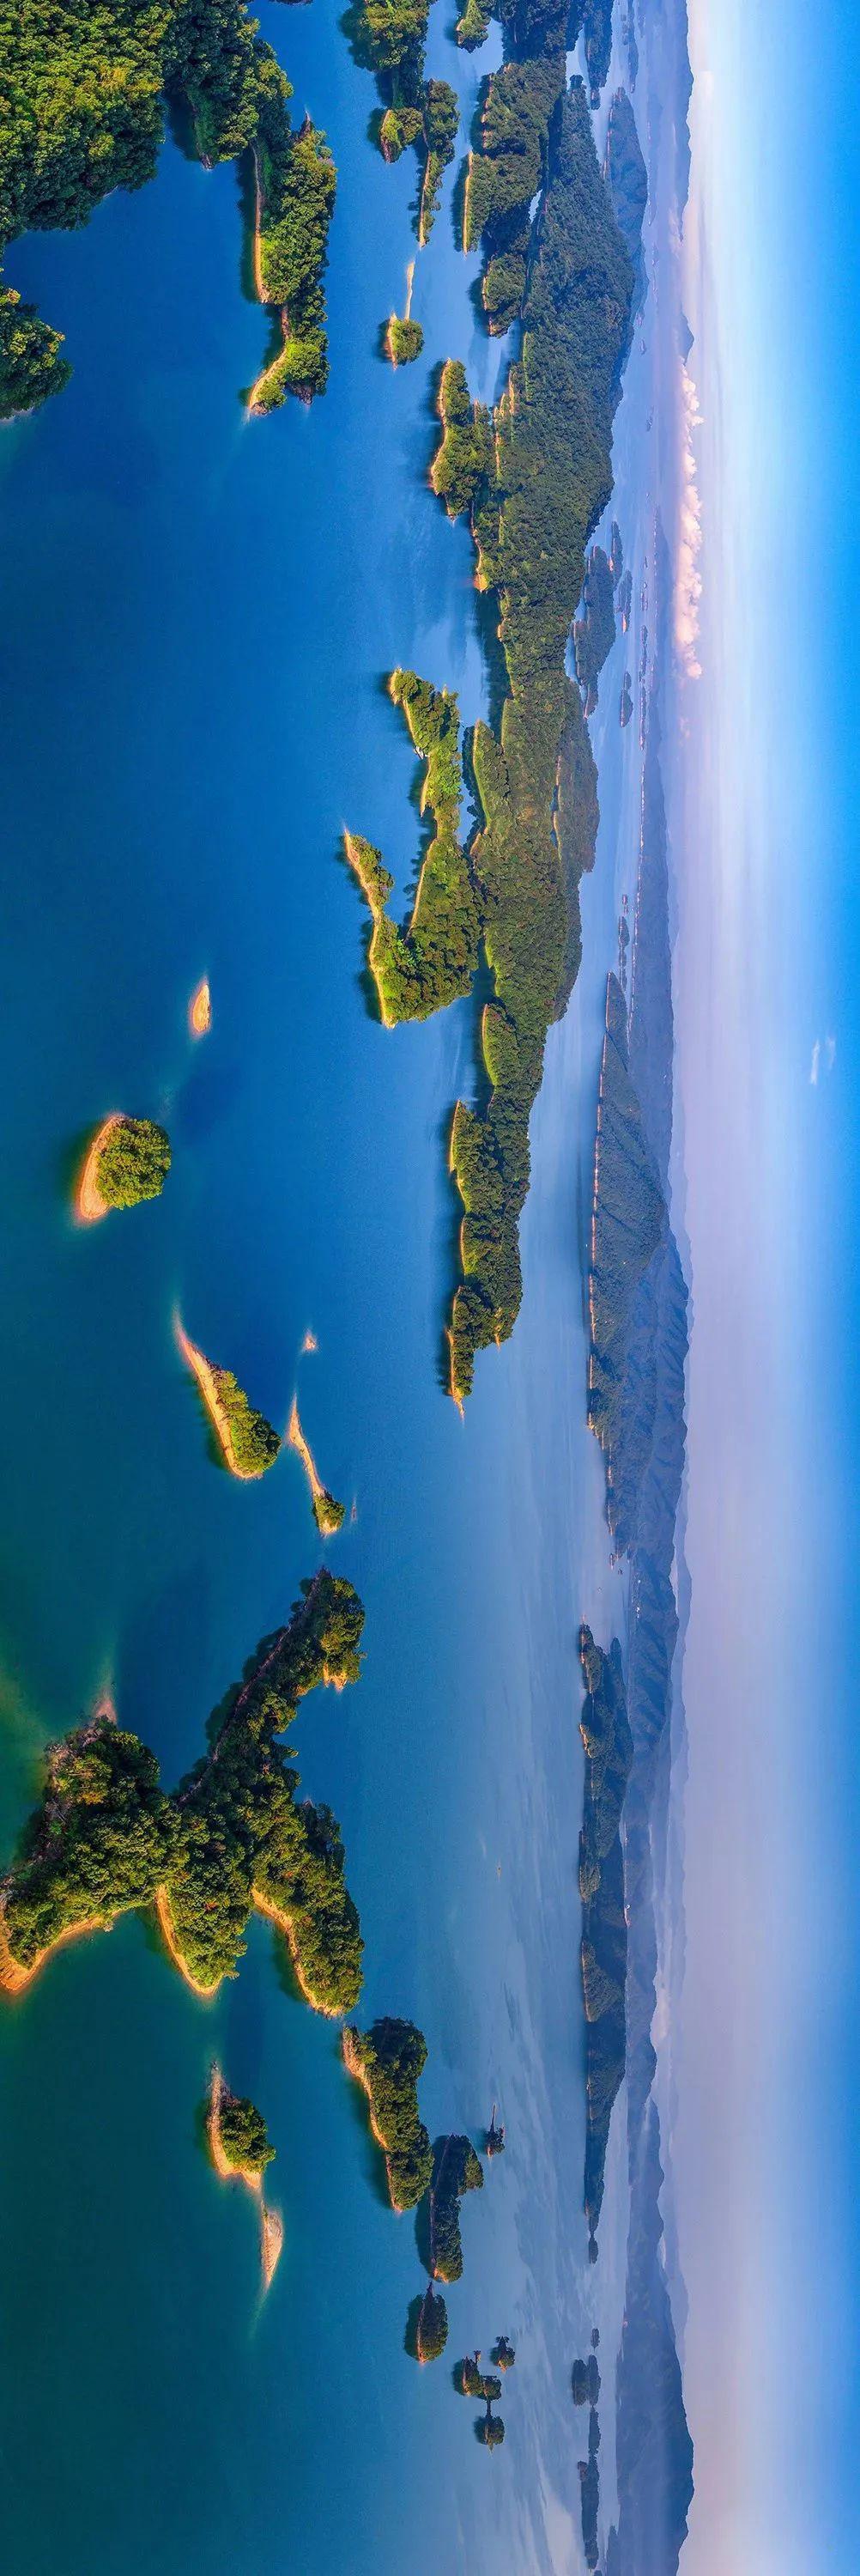 震撼云览万绿湖这一幅幅山水画卷